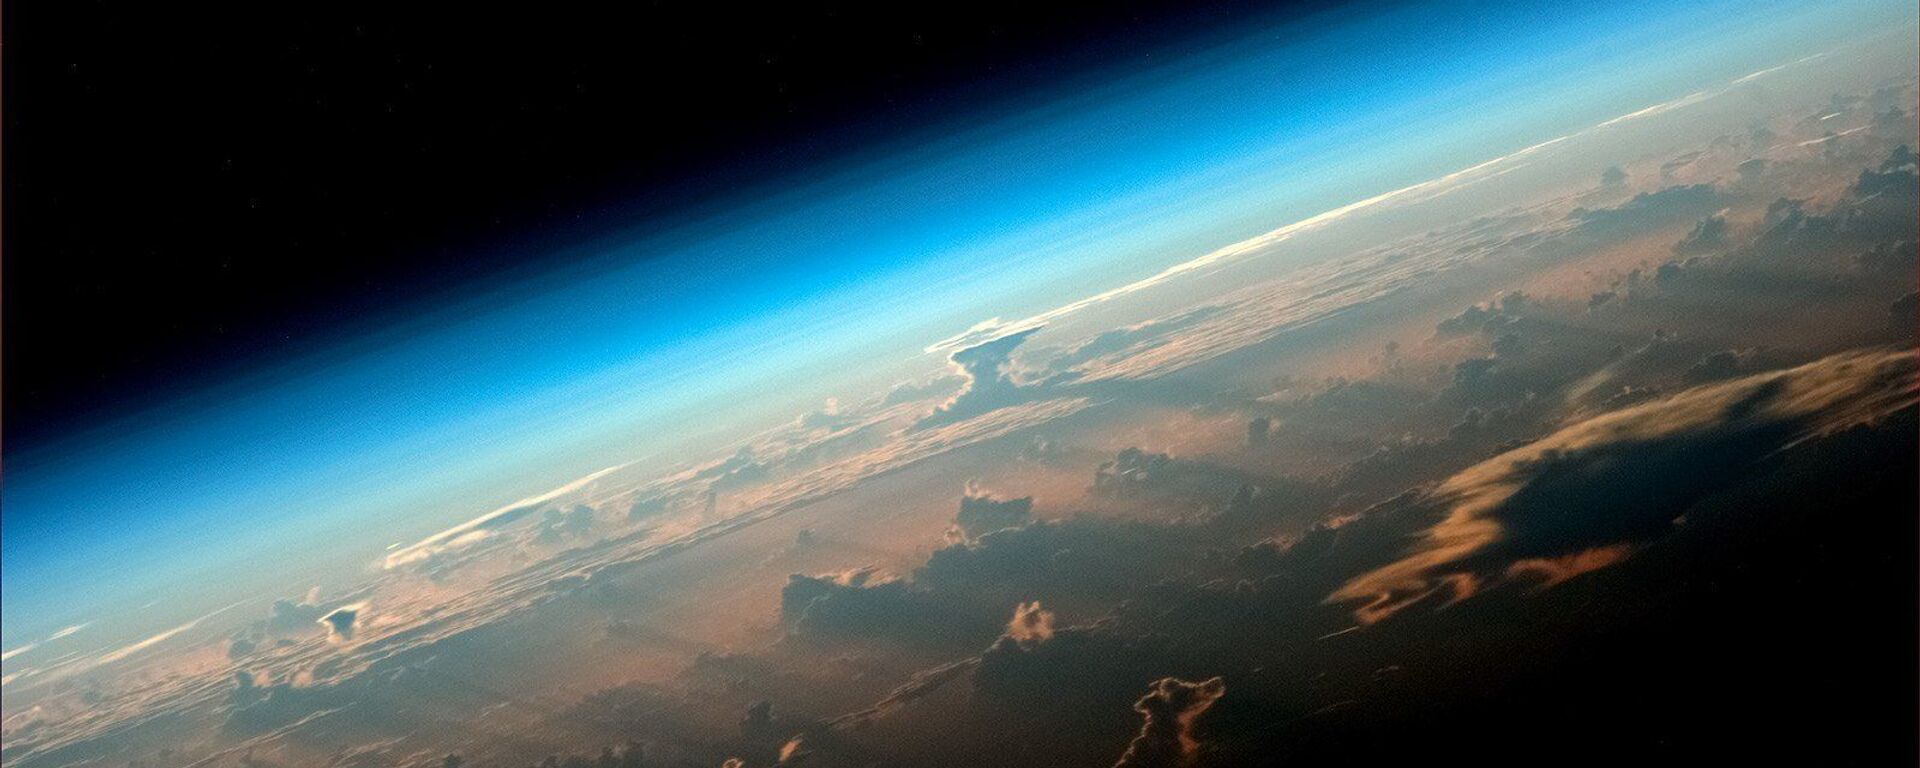 Вид на Землю с борта МКС снятый космонавтом Роскосмоса Олегом Артемьевым - Sputnik 日本, 1920, 21.06.2021